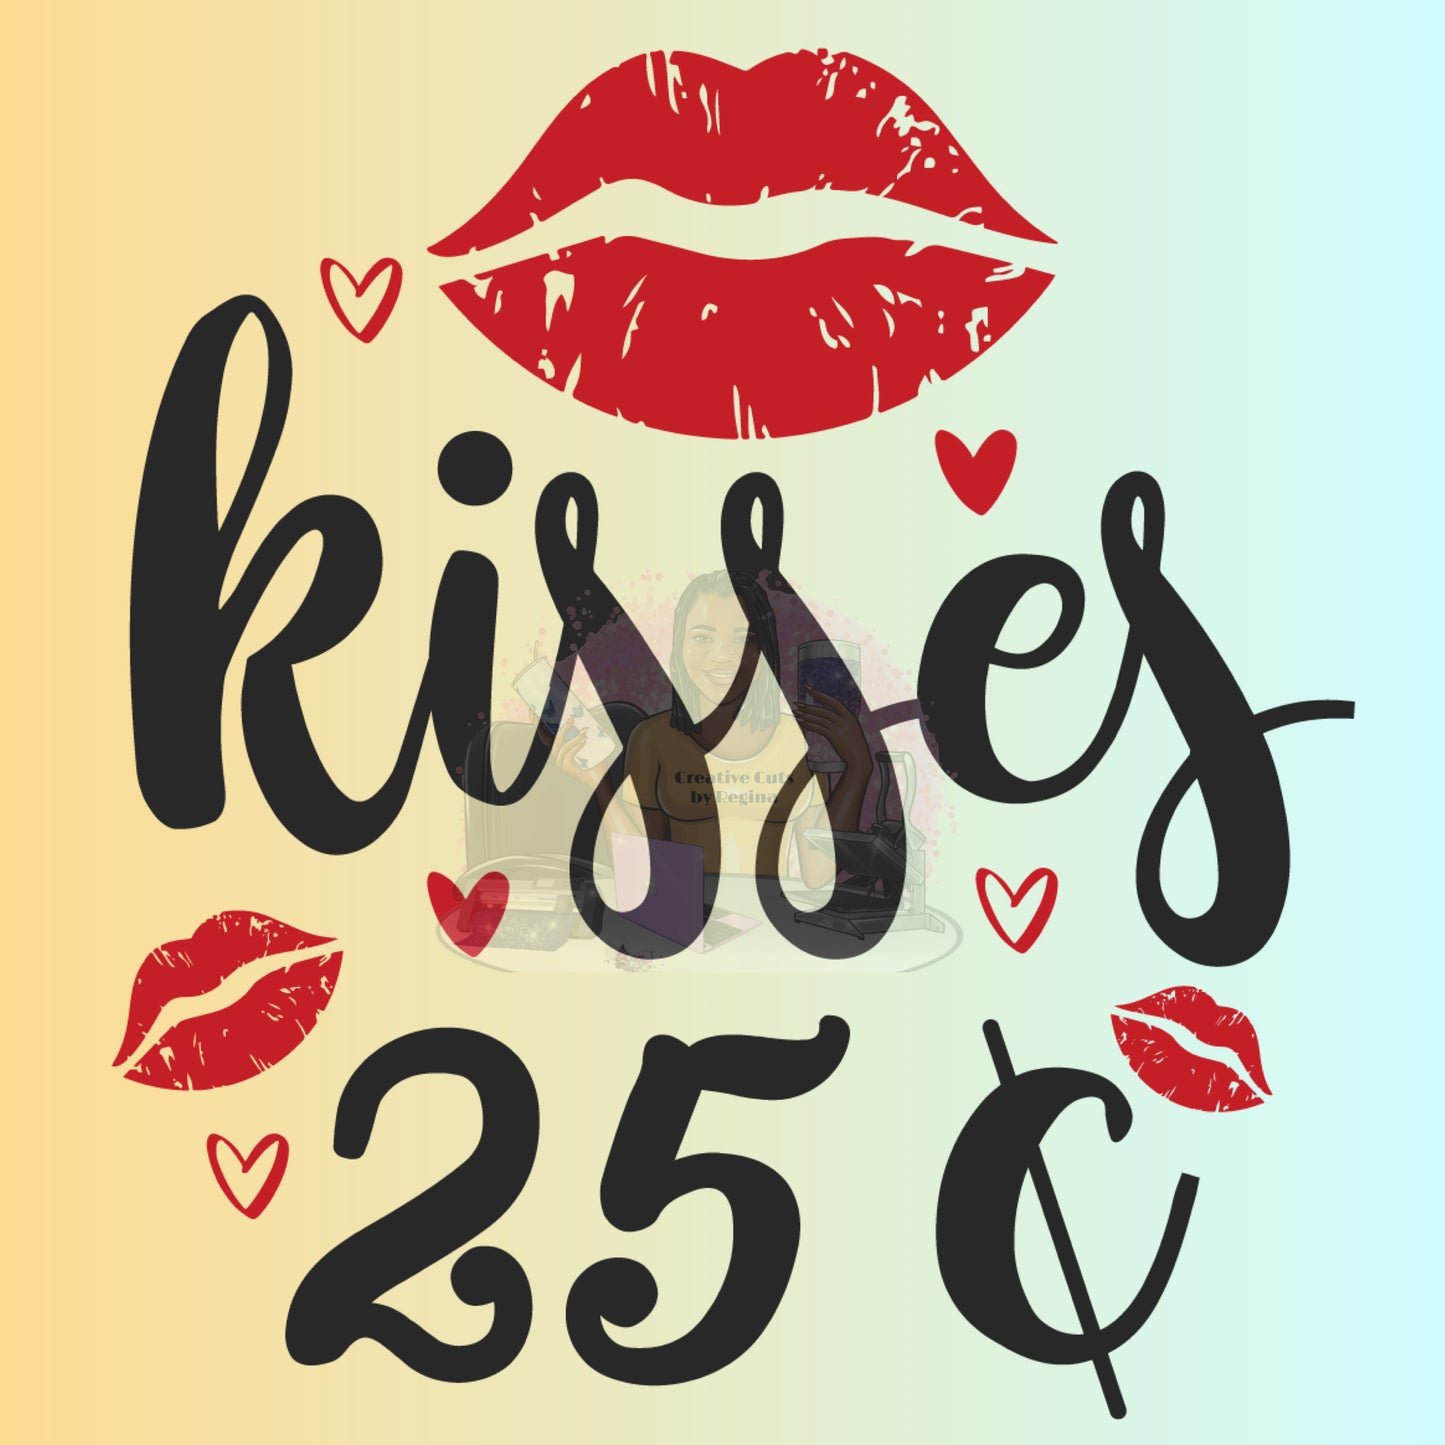 Kisses .25cents